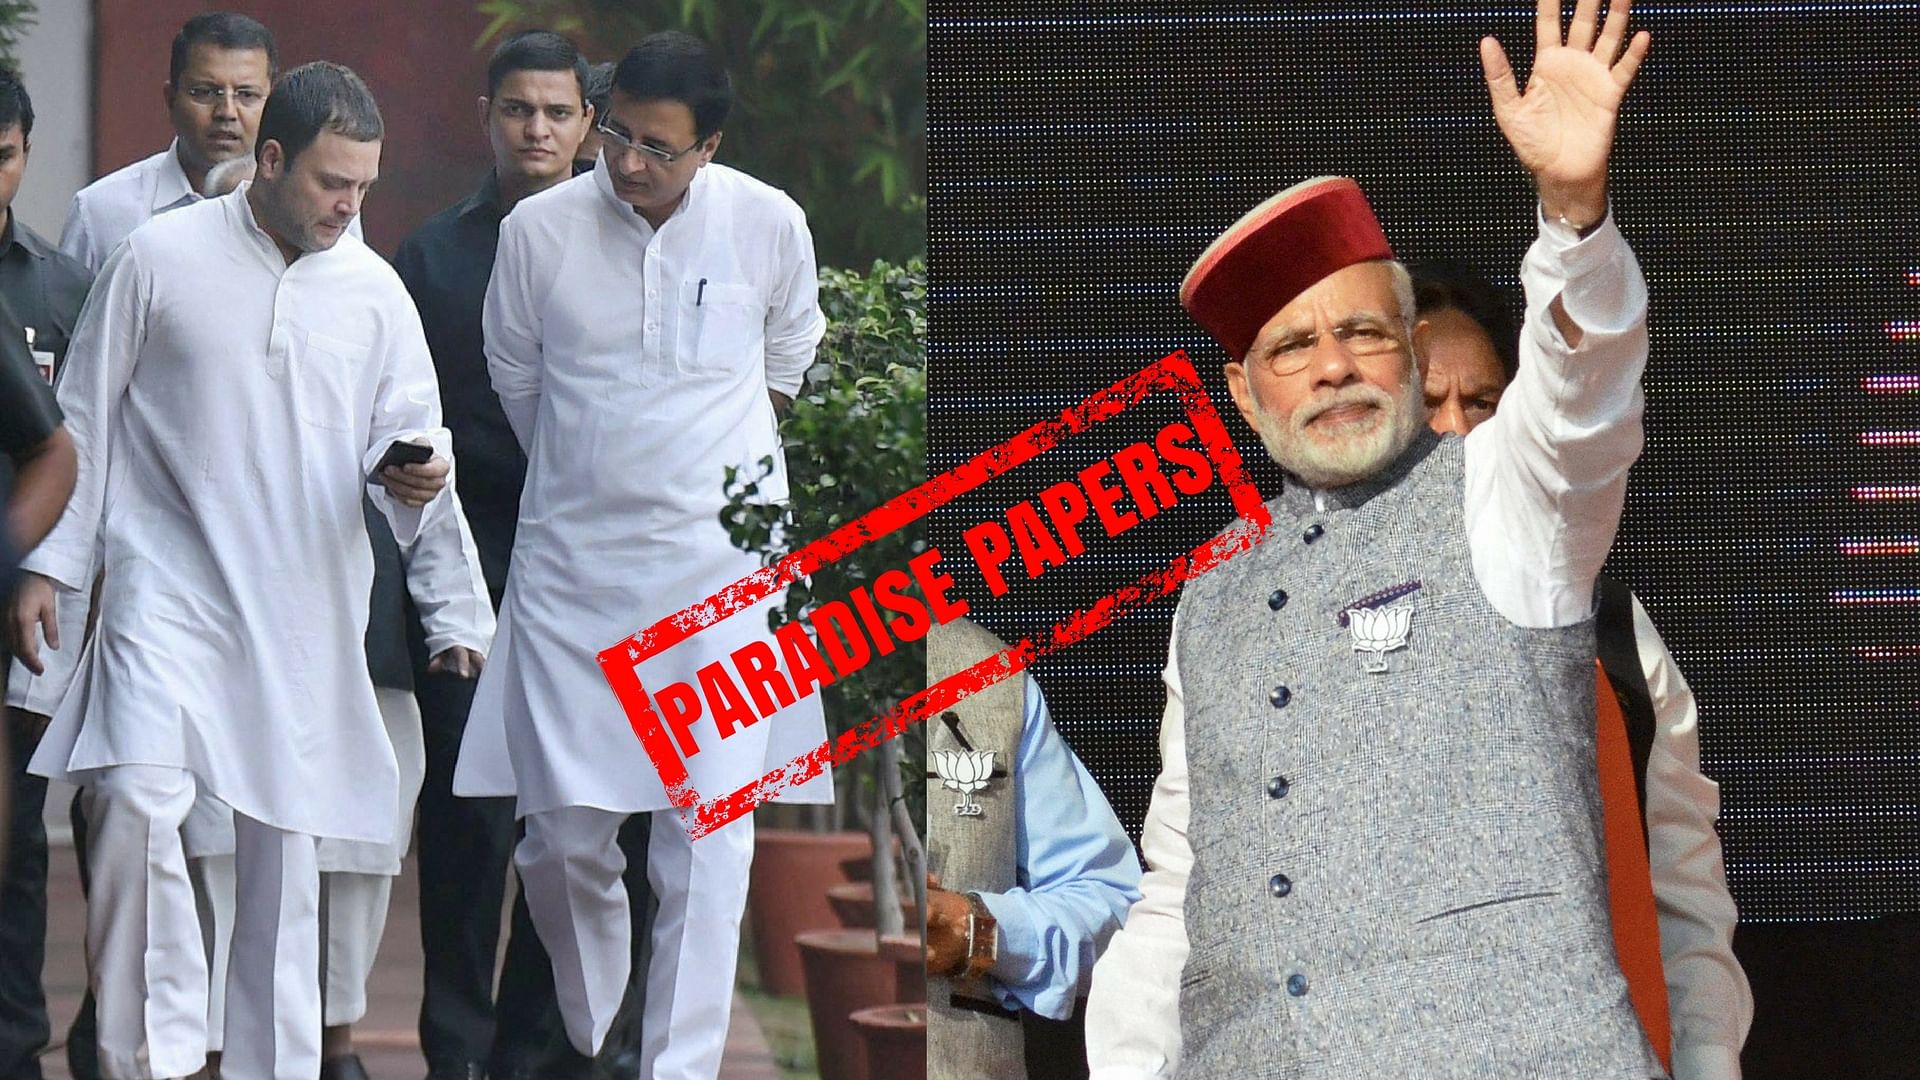 Randeep Surjewala has lashed out at the PM